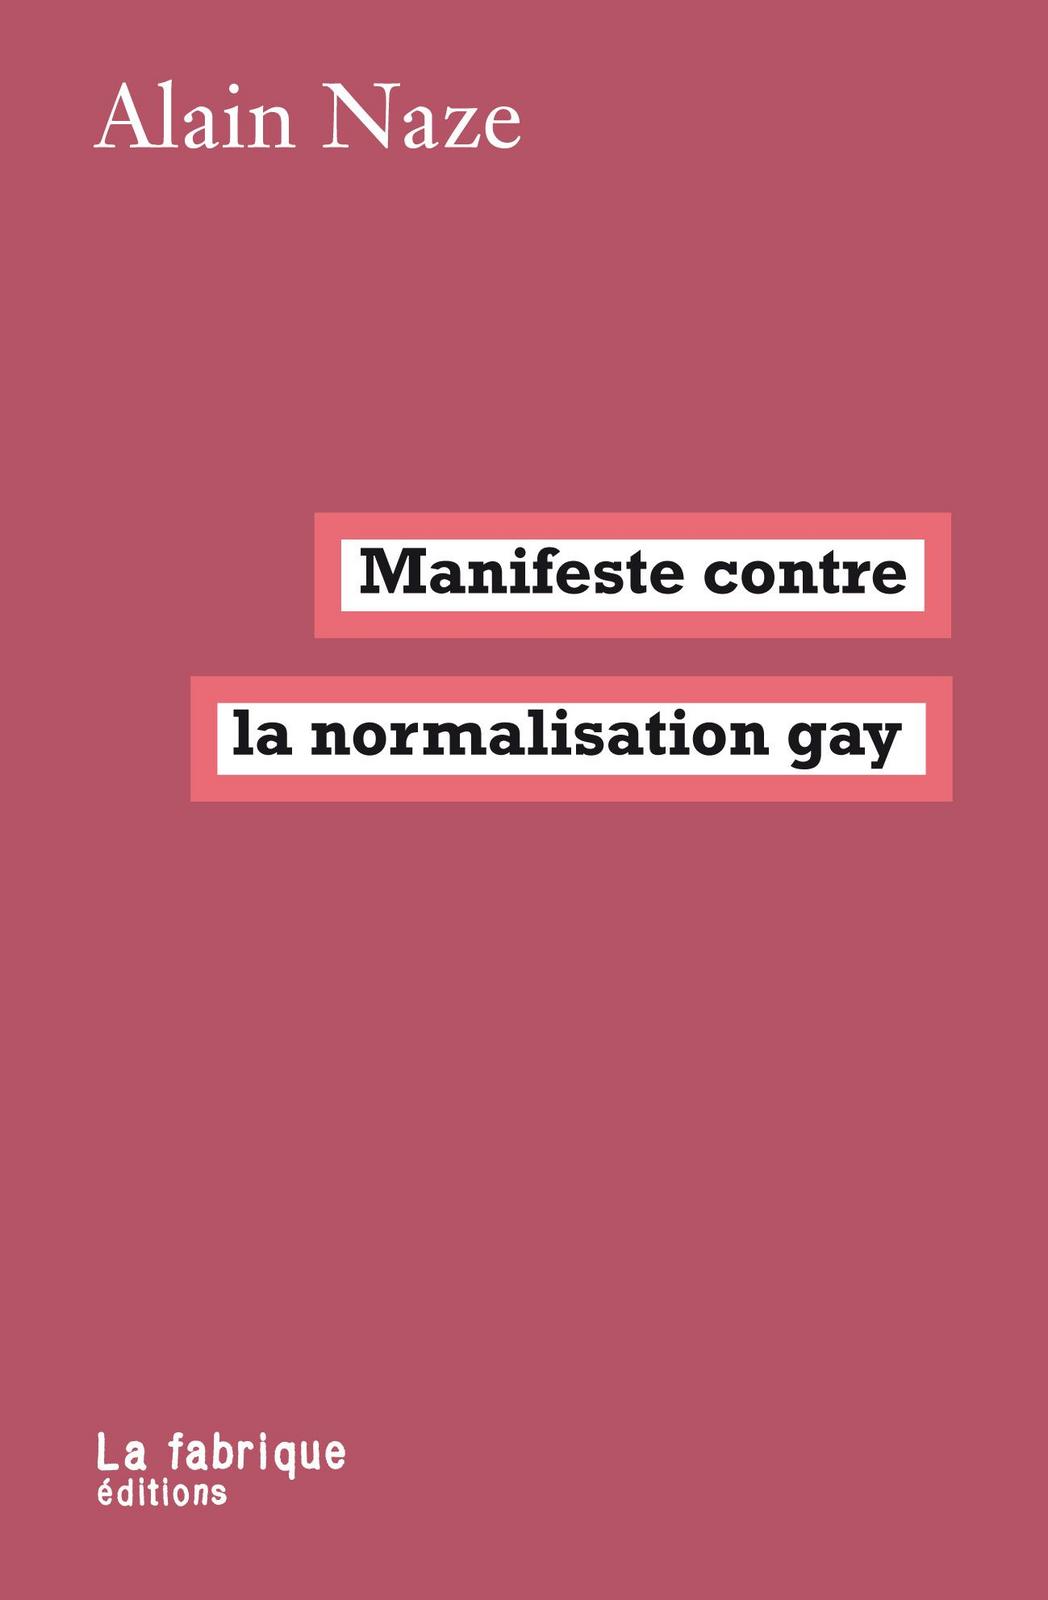 Manifeste contre la normalisation gay (French language, 2017, La Fabrique)